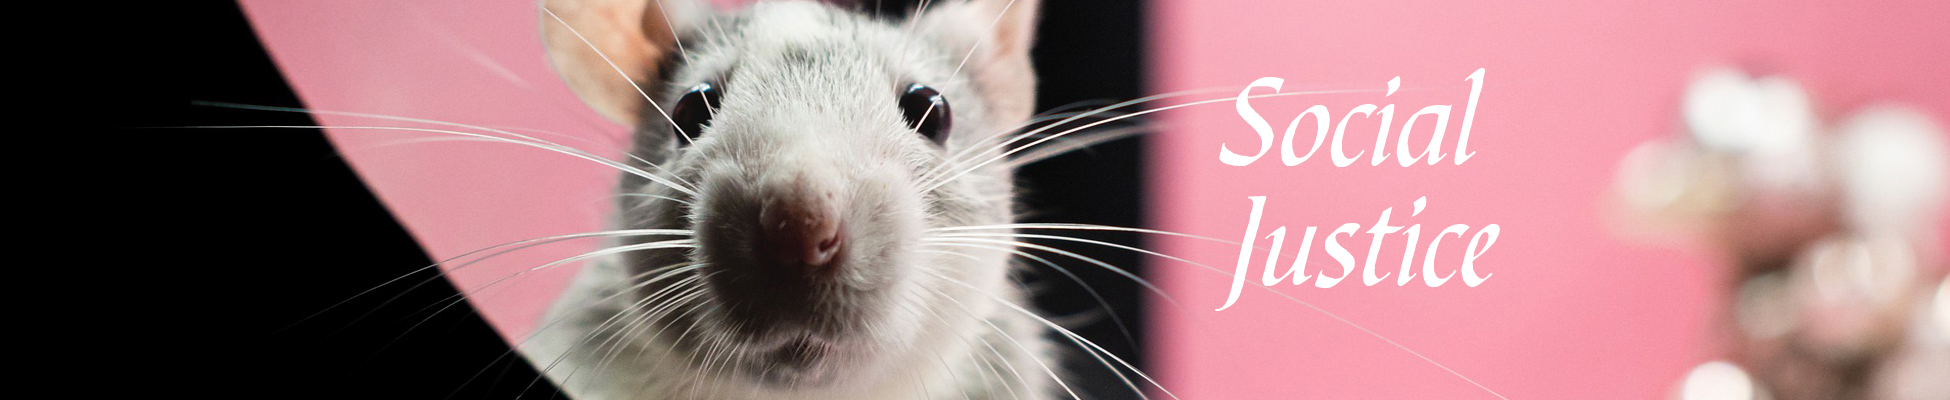 A close up of a cute rat